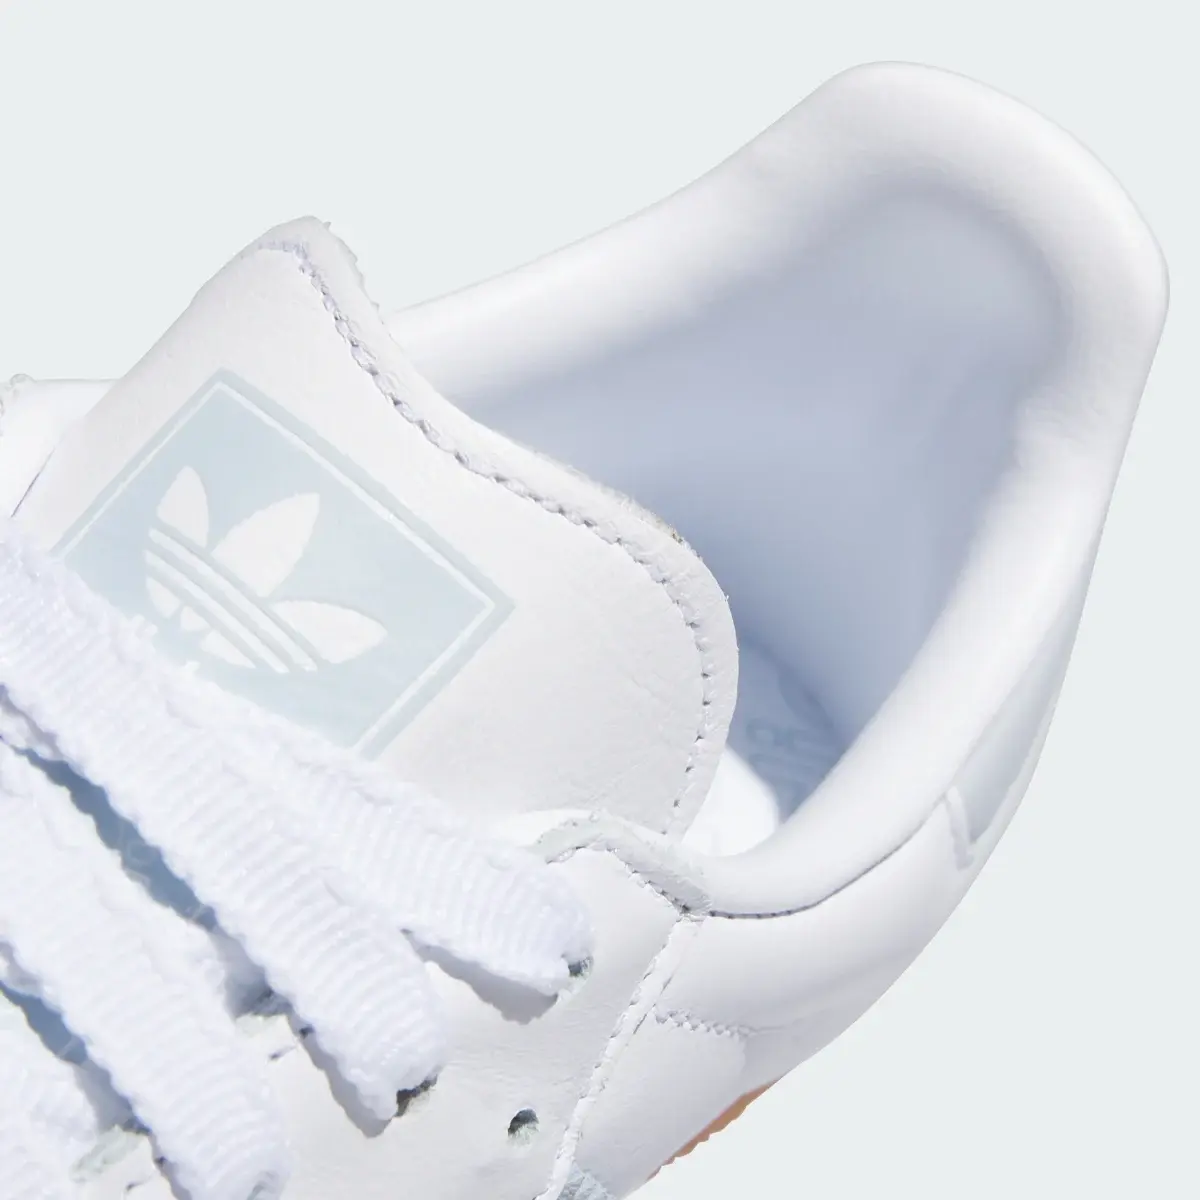 Adidas Samba OG Shoes. 3